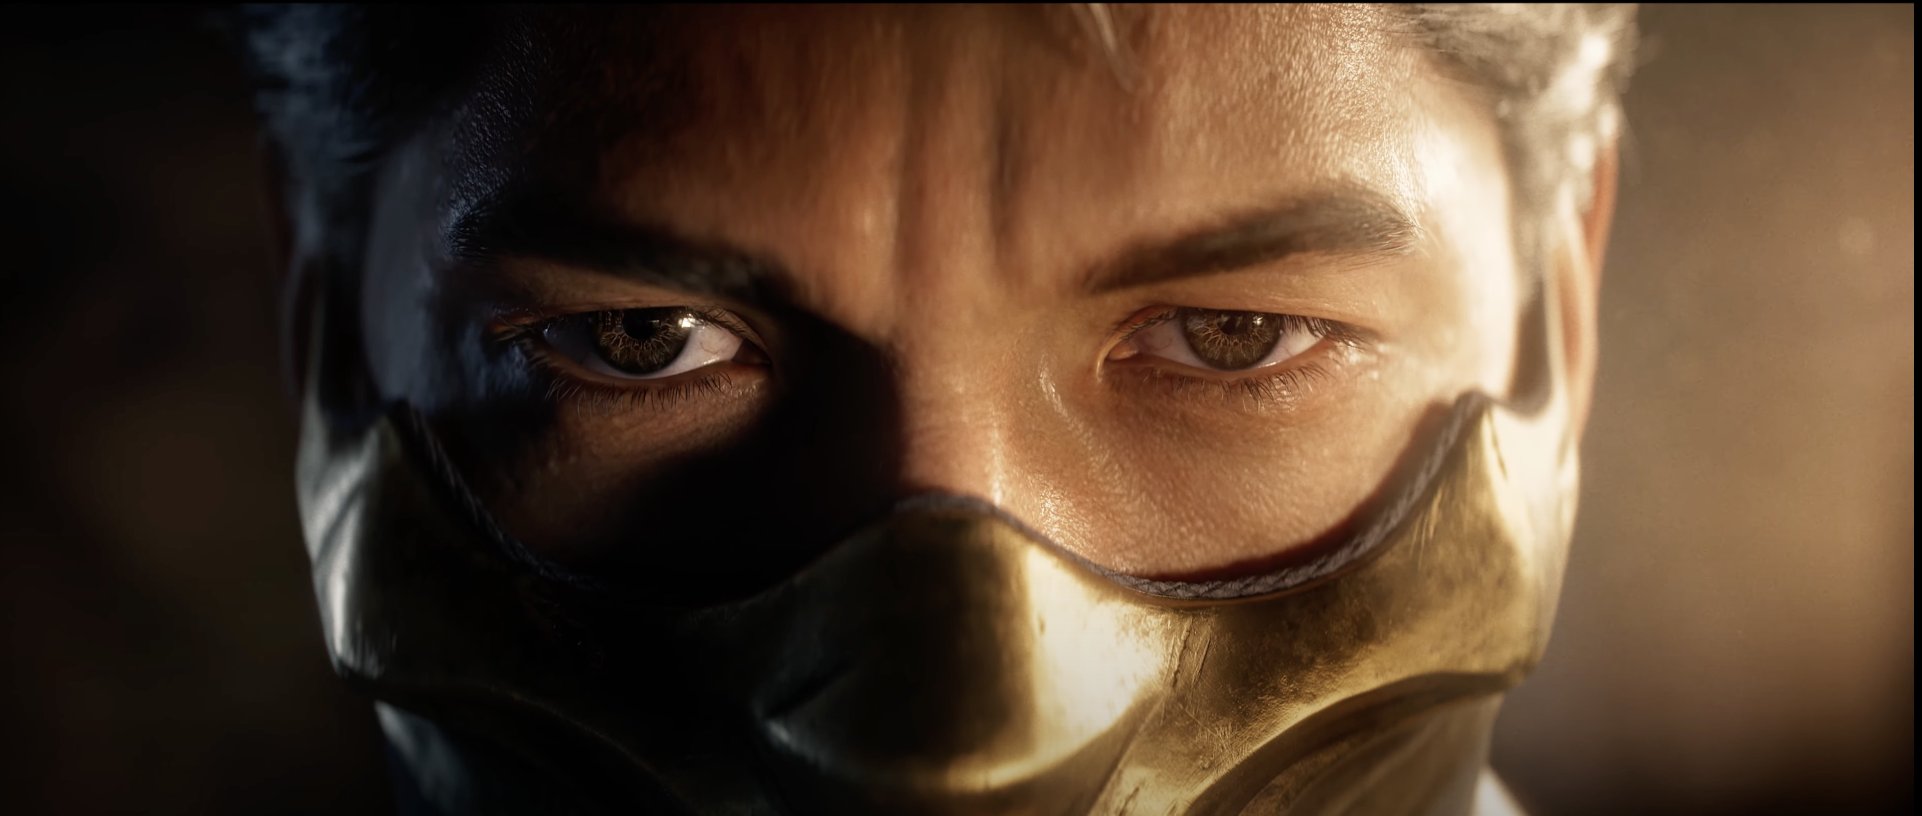 Mortal Kombat 1 DLC Leaks, Includes Homelander, Peacemaker